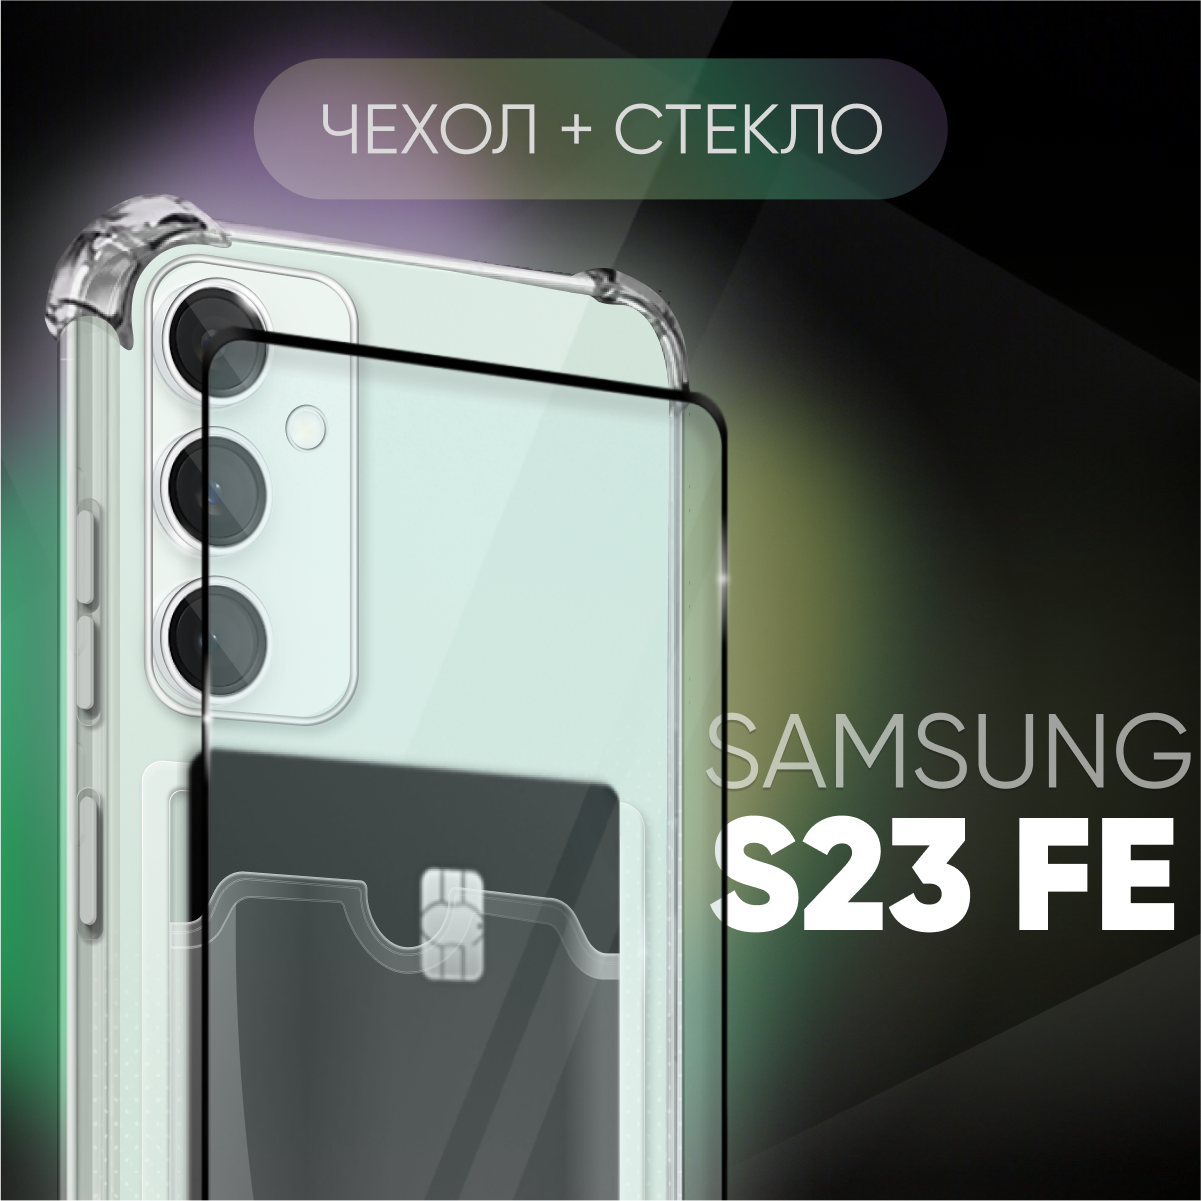 Комплект 2 в 1: Чехол №05 + стекло для Samsung Galaxy S23 FE / противоударный прозрачный клип-кейс с карманом для карт и защитой камеры и углов